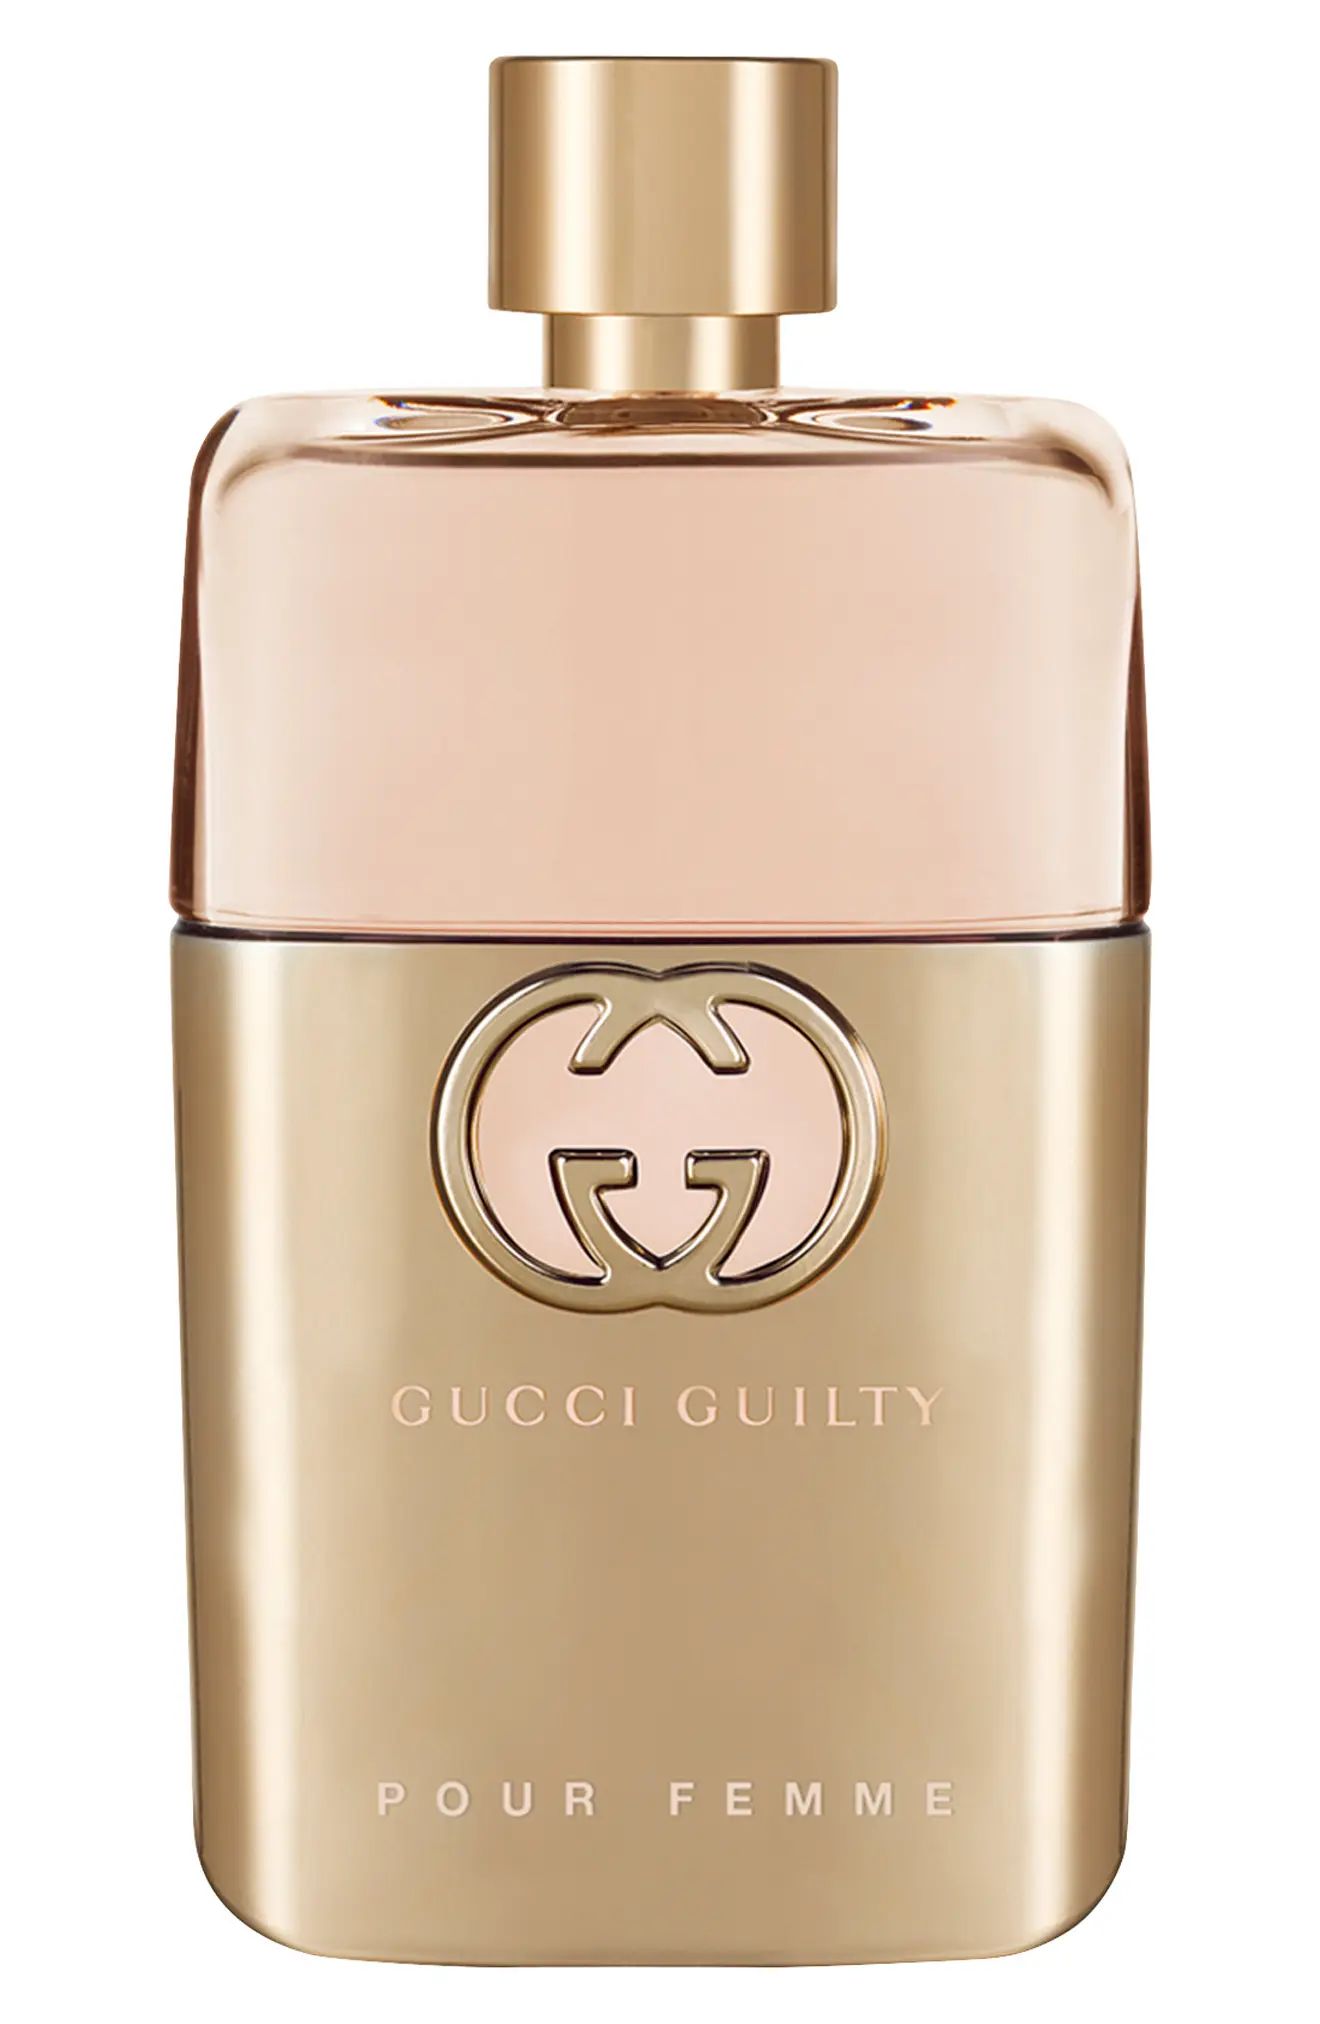 Gucci Guilty Pour Femme Eau de Parfum at Nordstrom, Size 1.6 Oz | Nordstrom